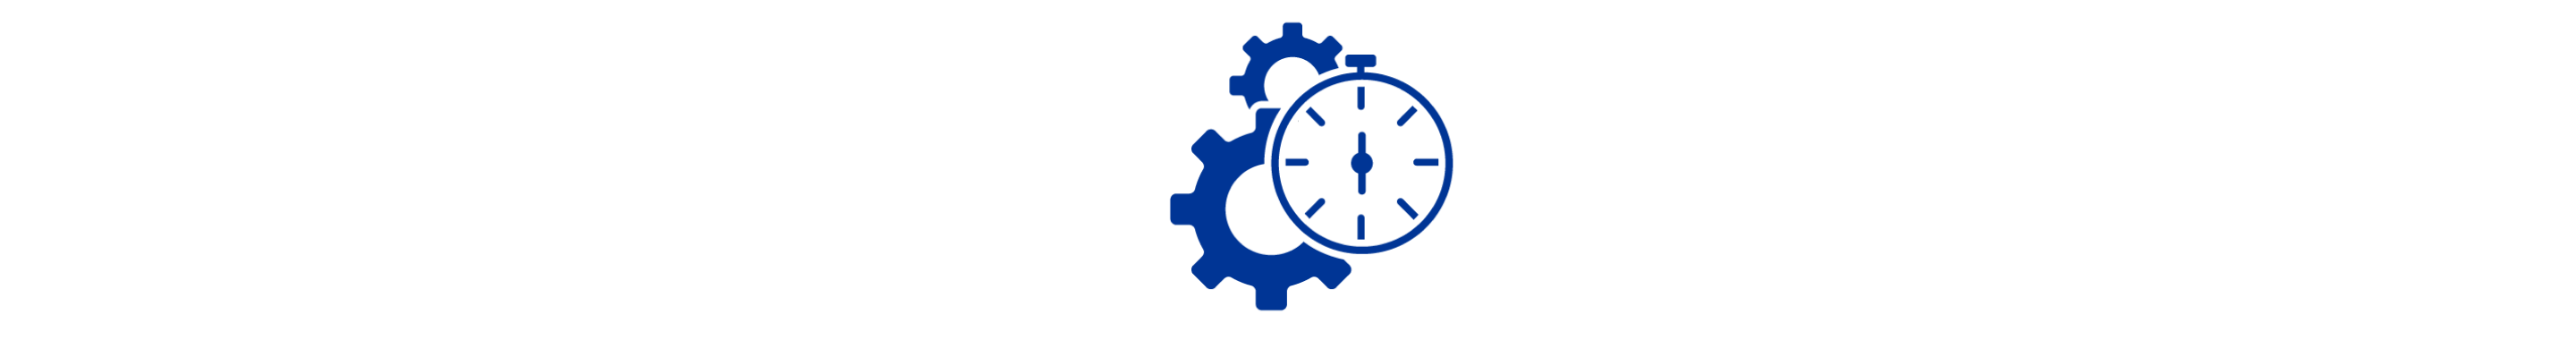 Une icône bleue représentant deux engrenages derrière un chronomètre